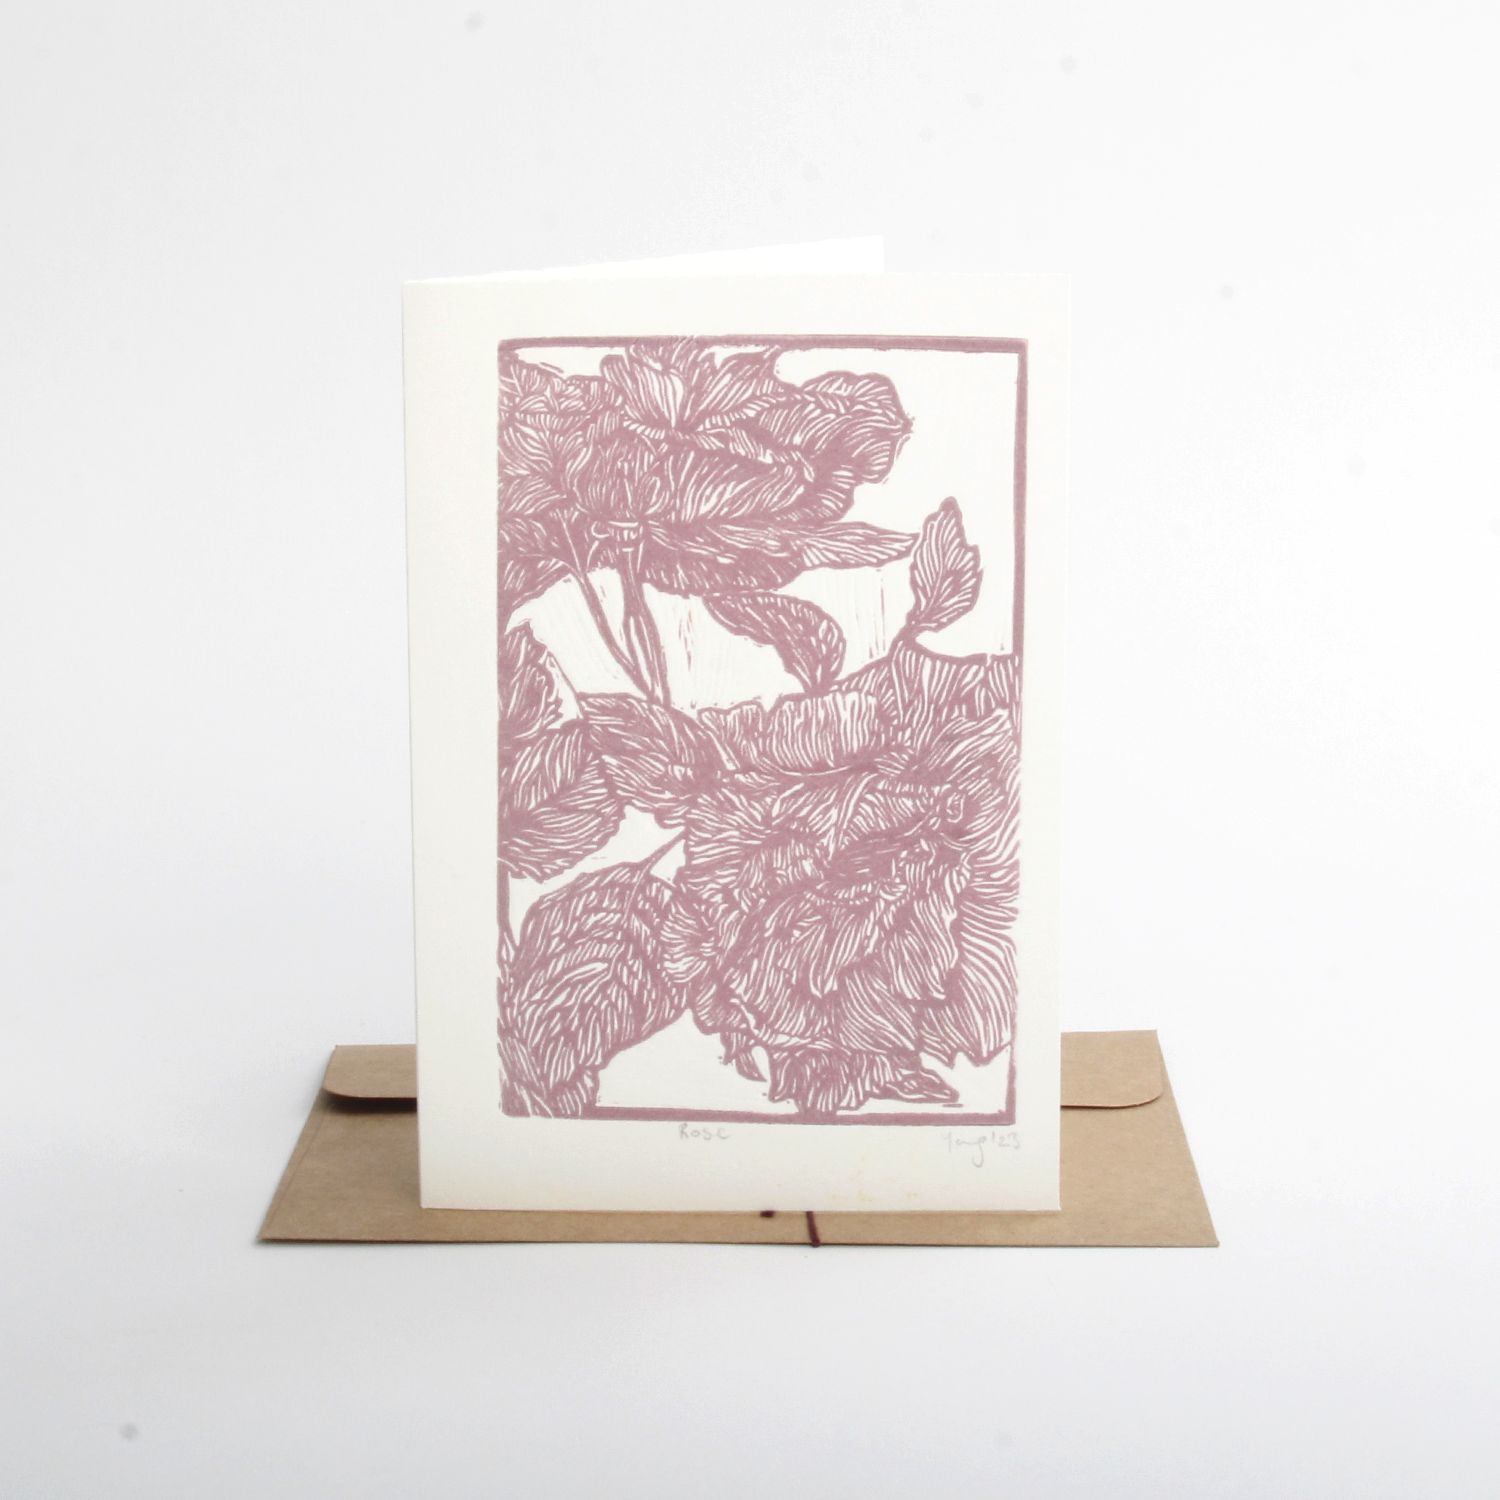 Jing Han Yang: Rose card Product Image 2 of 2